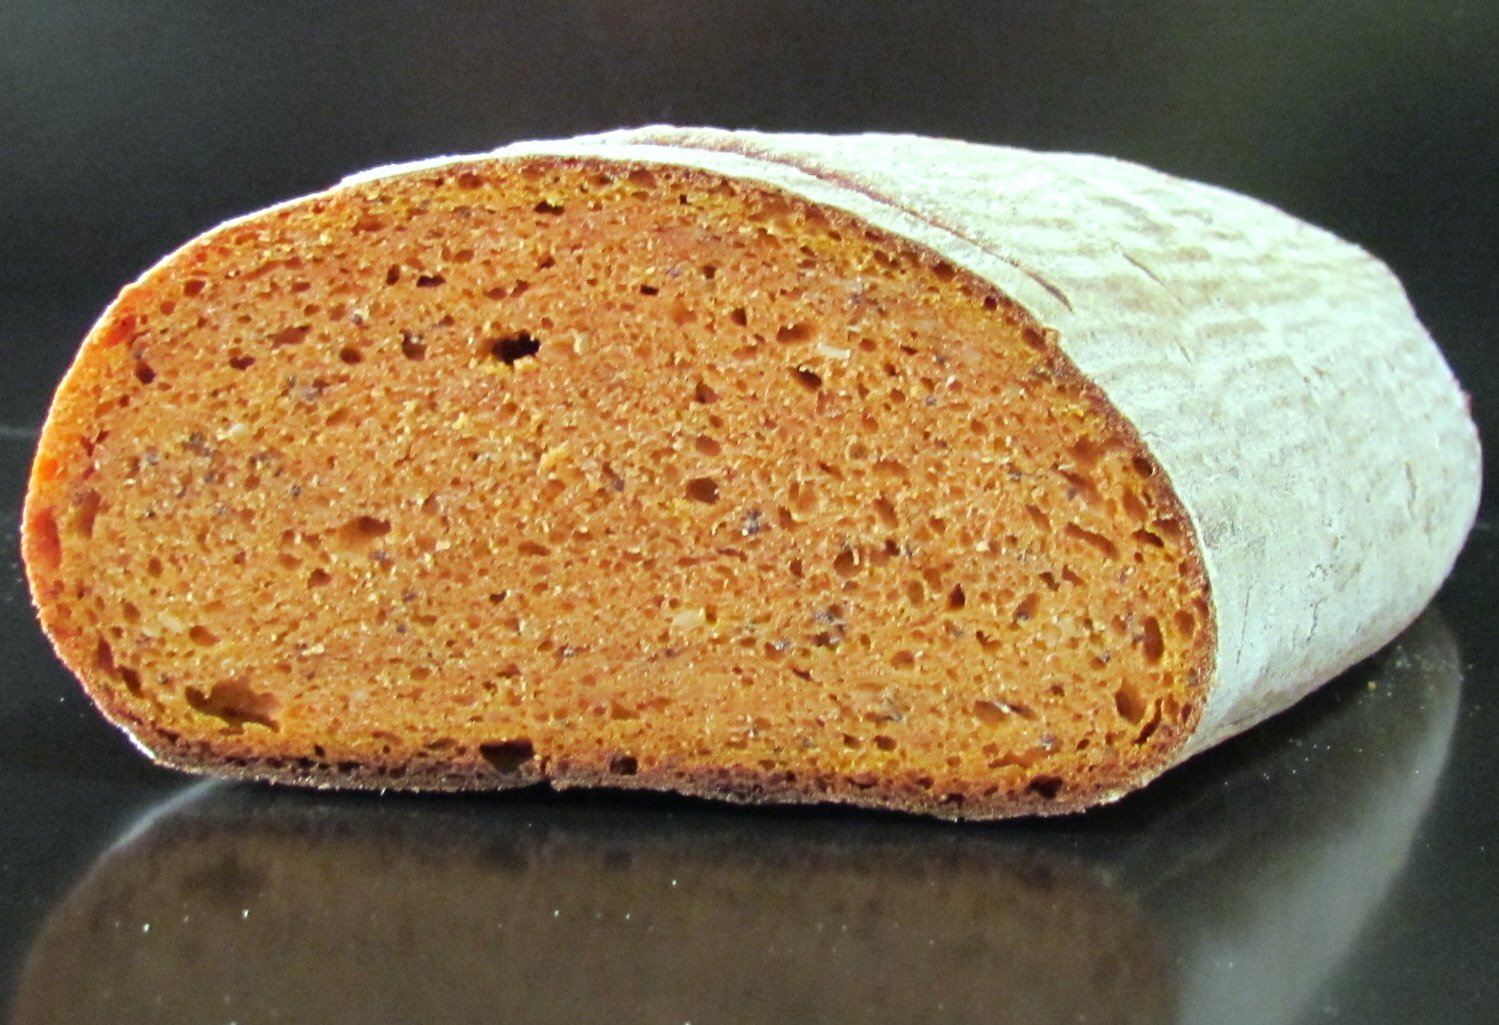 Sourdough pumpkin bread in the oven